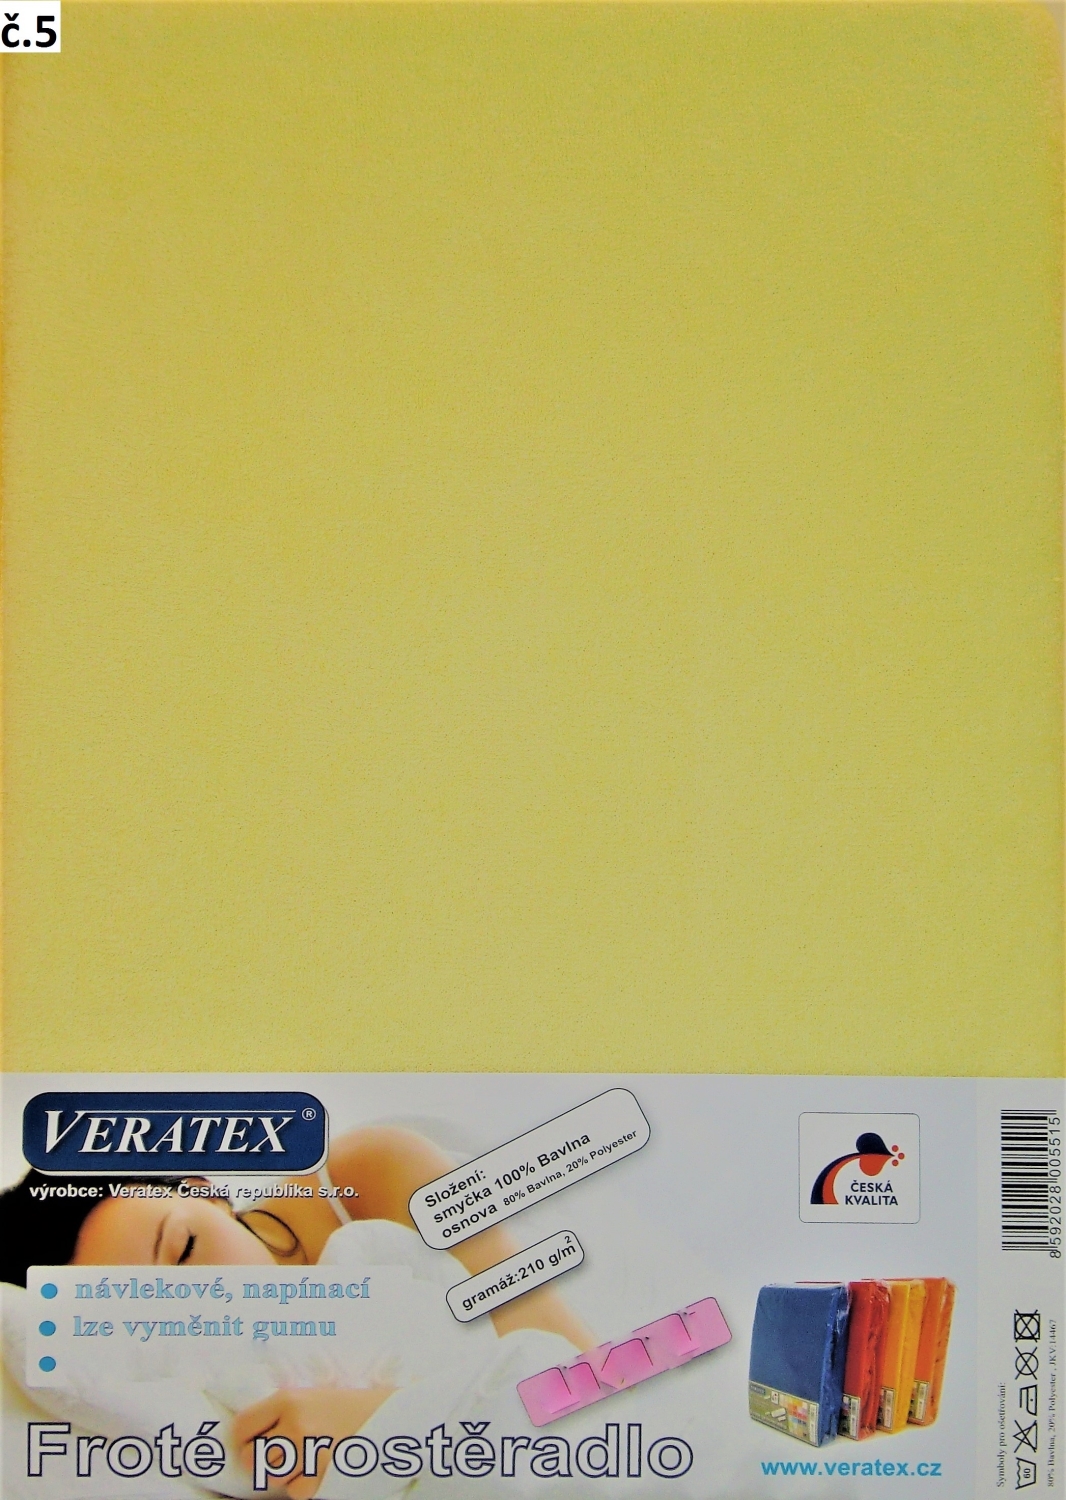 Veratex Froté prostěradlo 100x200 cm (č. 5-sv.žlutá)